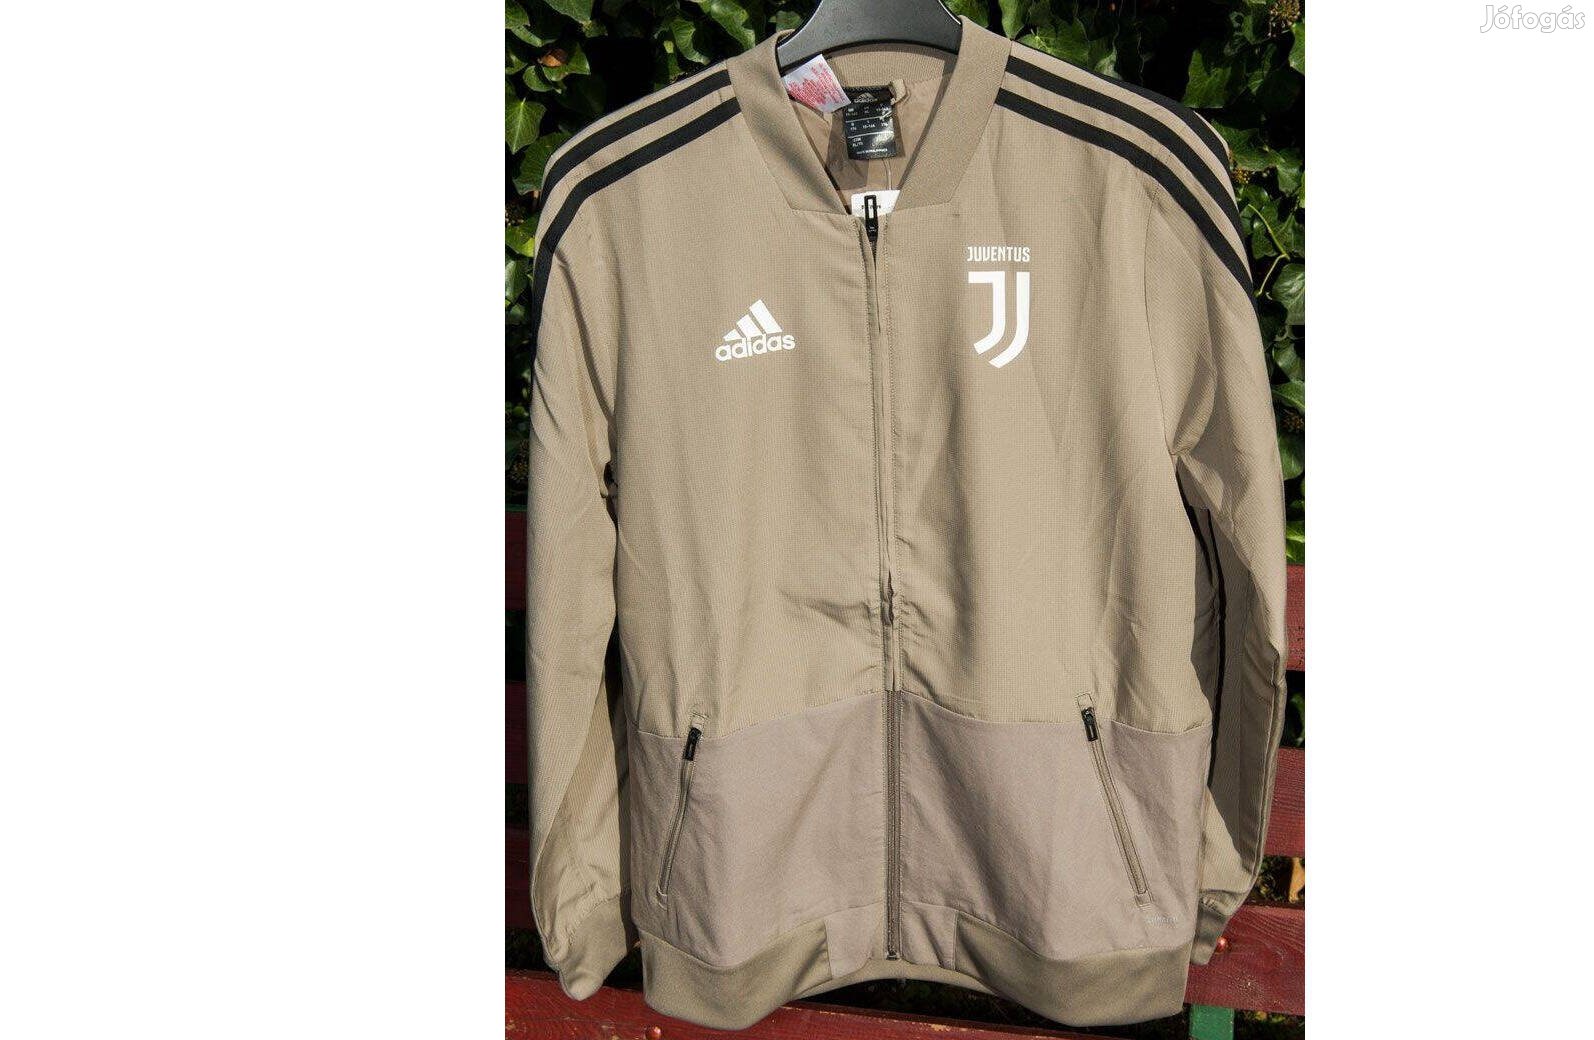 Juventus eredeti adidas drapp tréning felső (XL, 176)